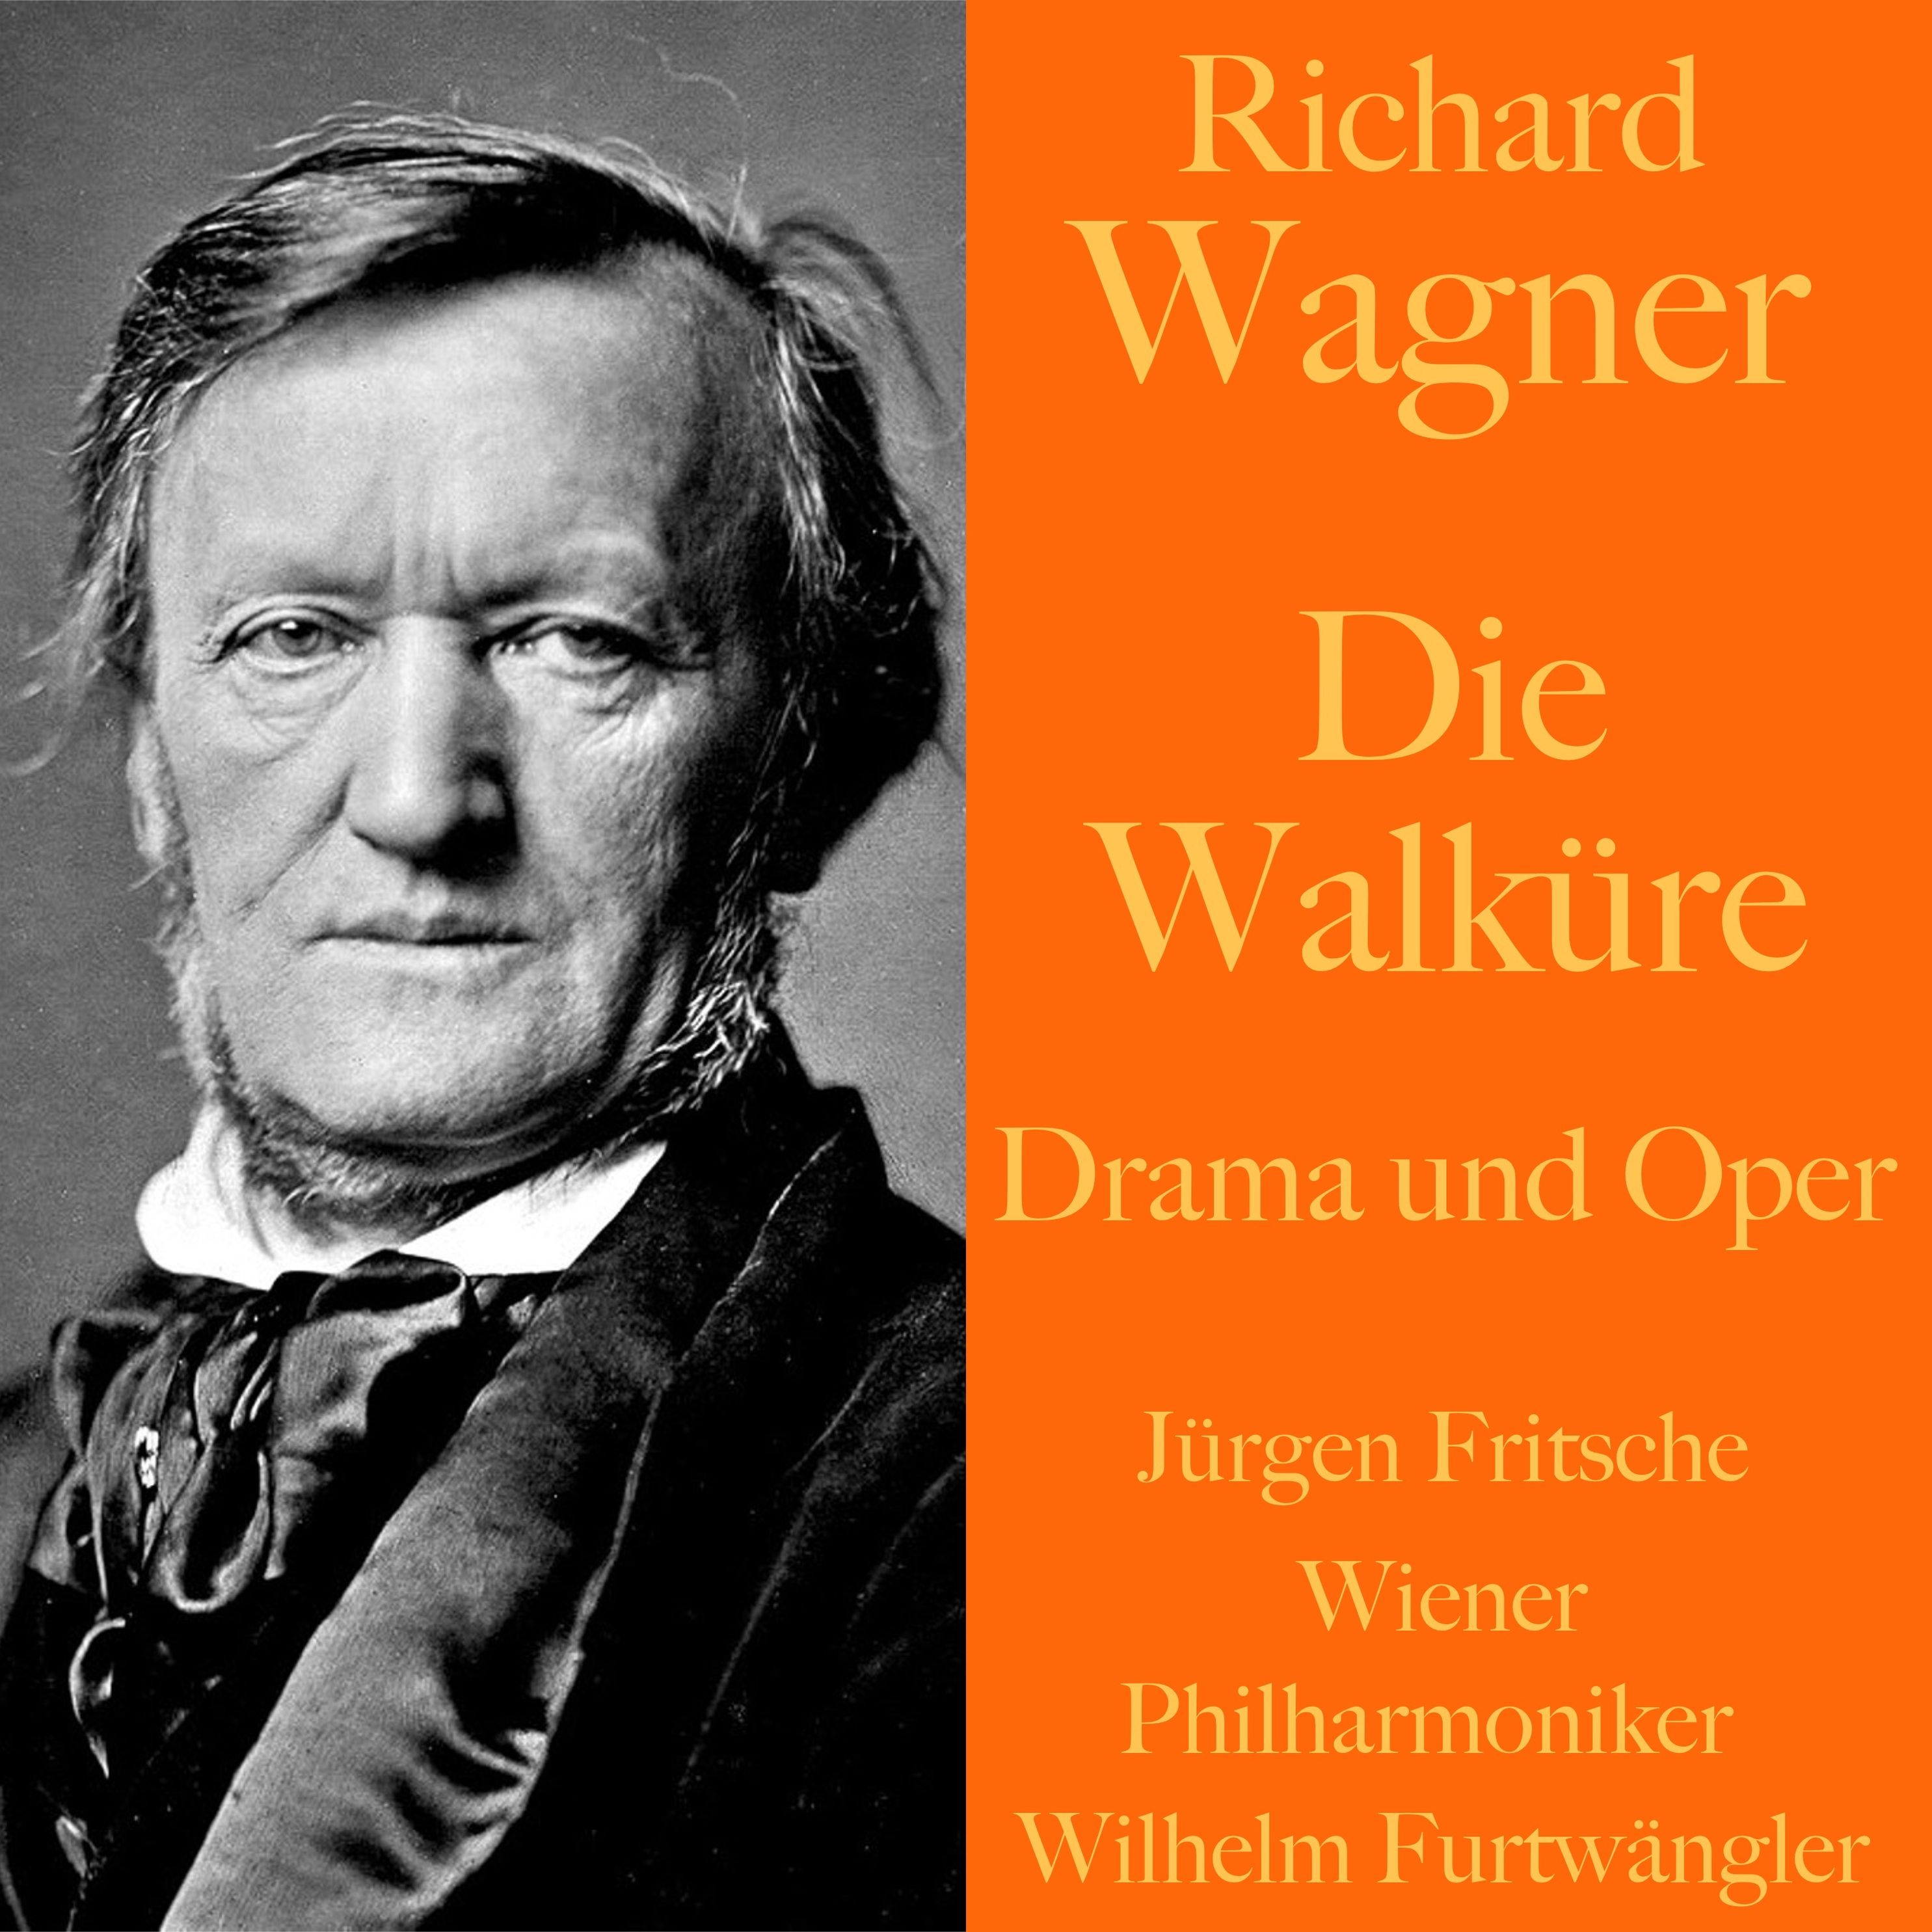 Der Ring des Nibelungen - 2 - Richard Wagner: Die Walküre - Drama und Oper  Hörbuch Download